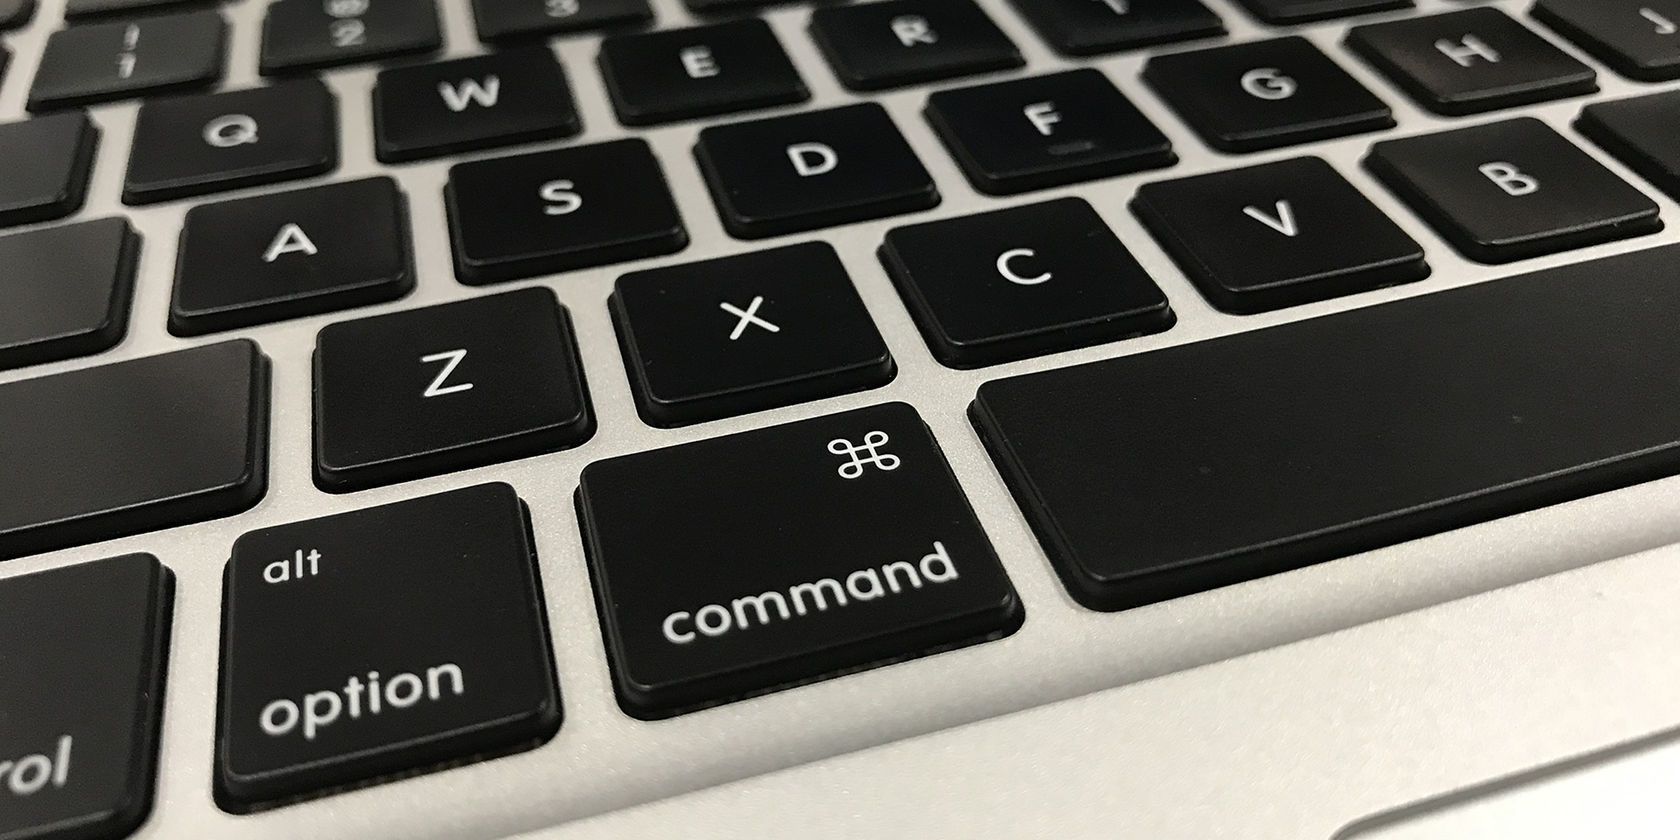 copy paste on mac keyboard